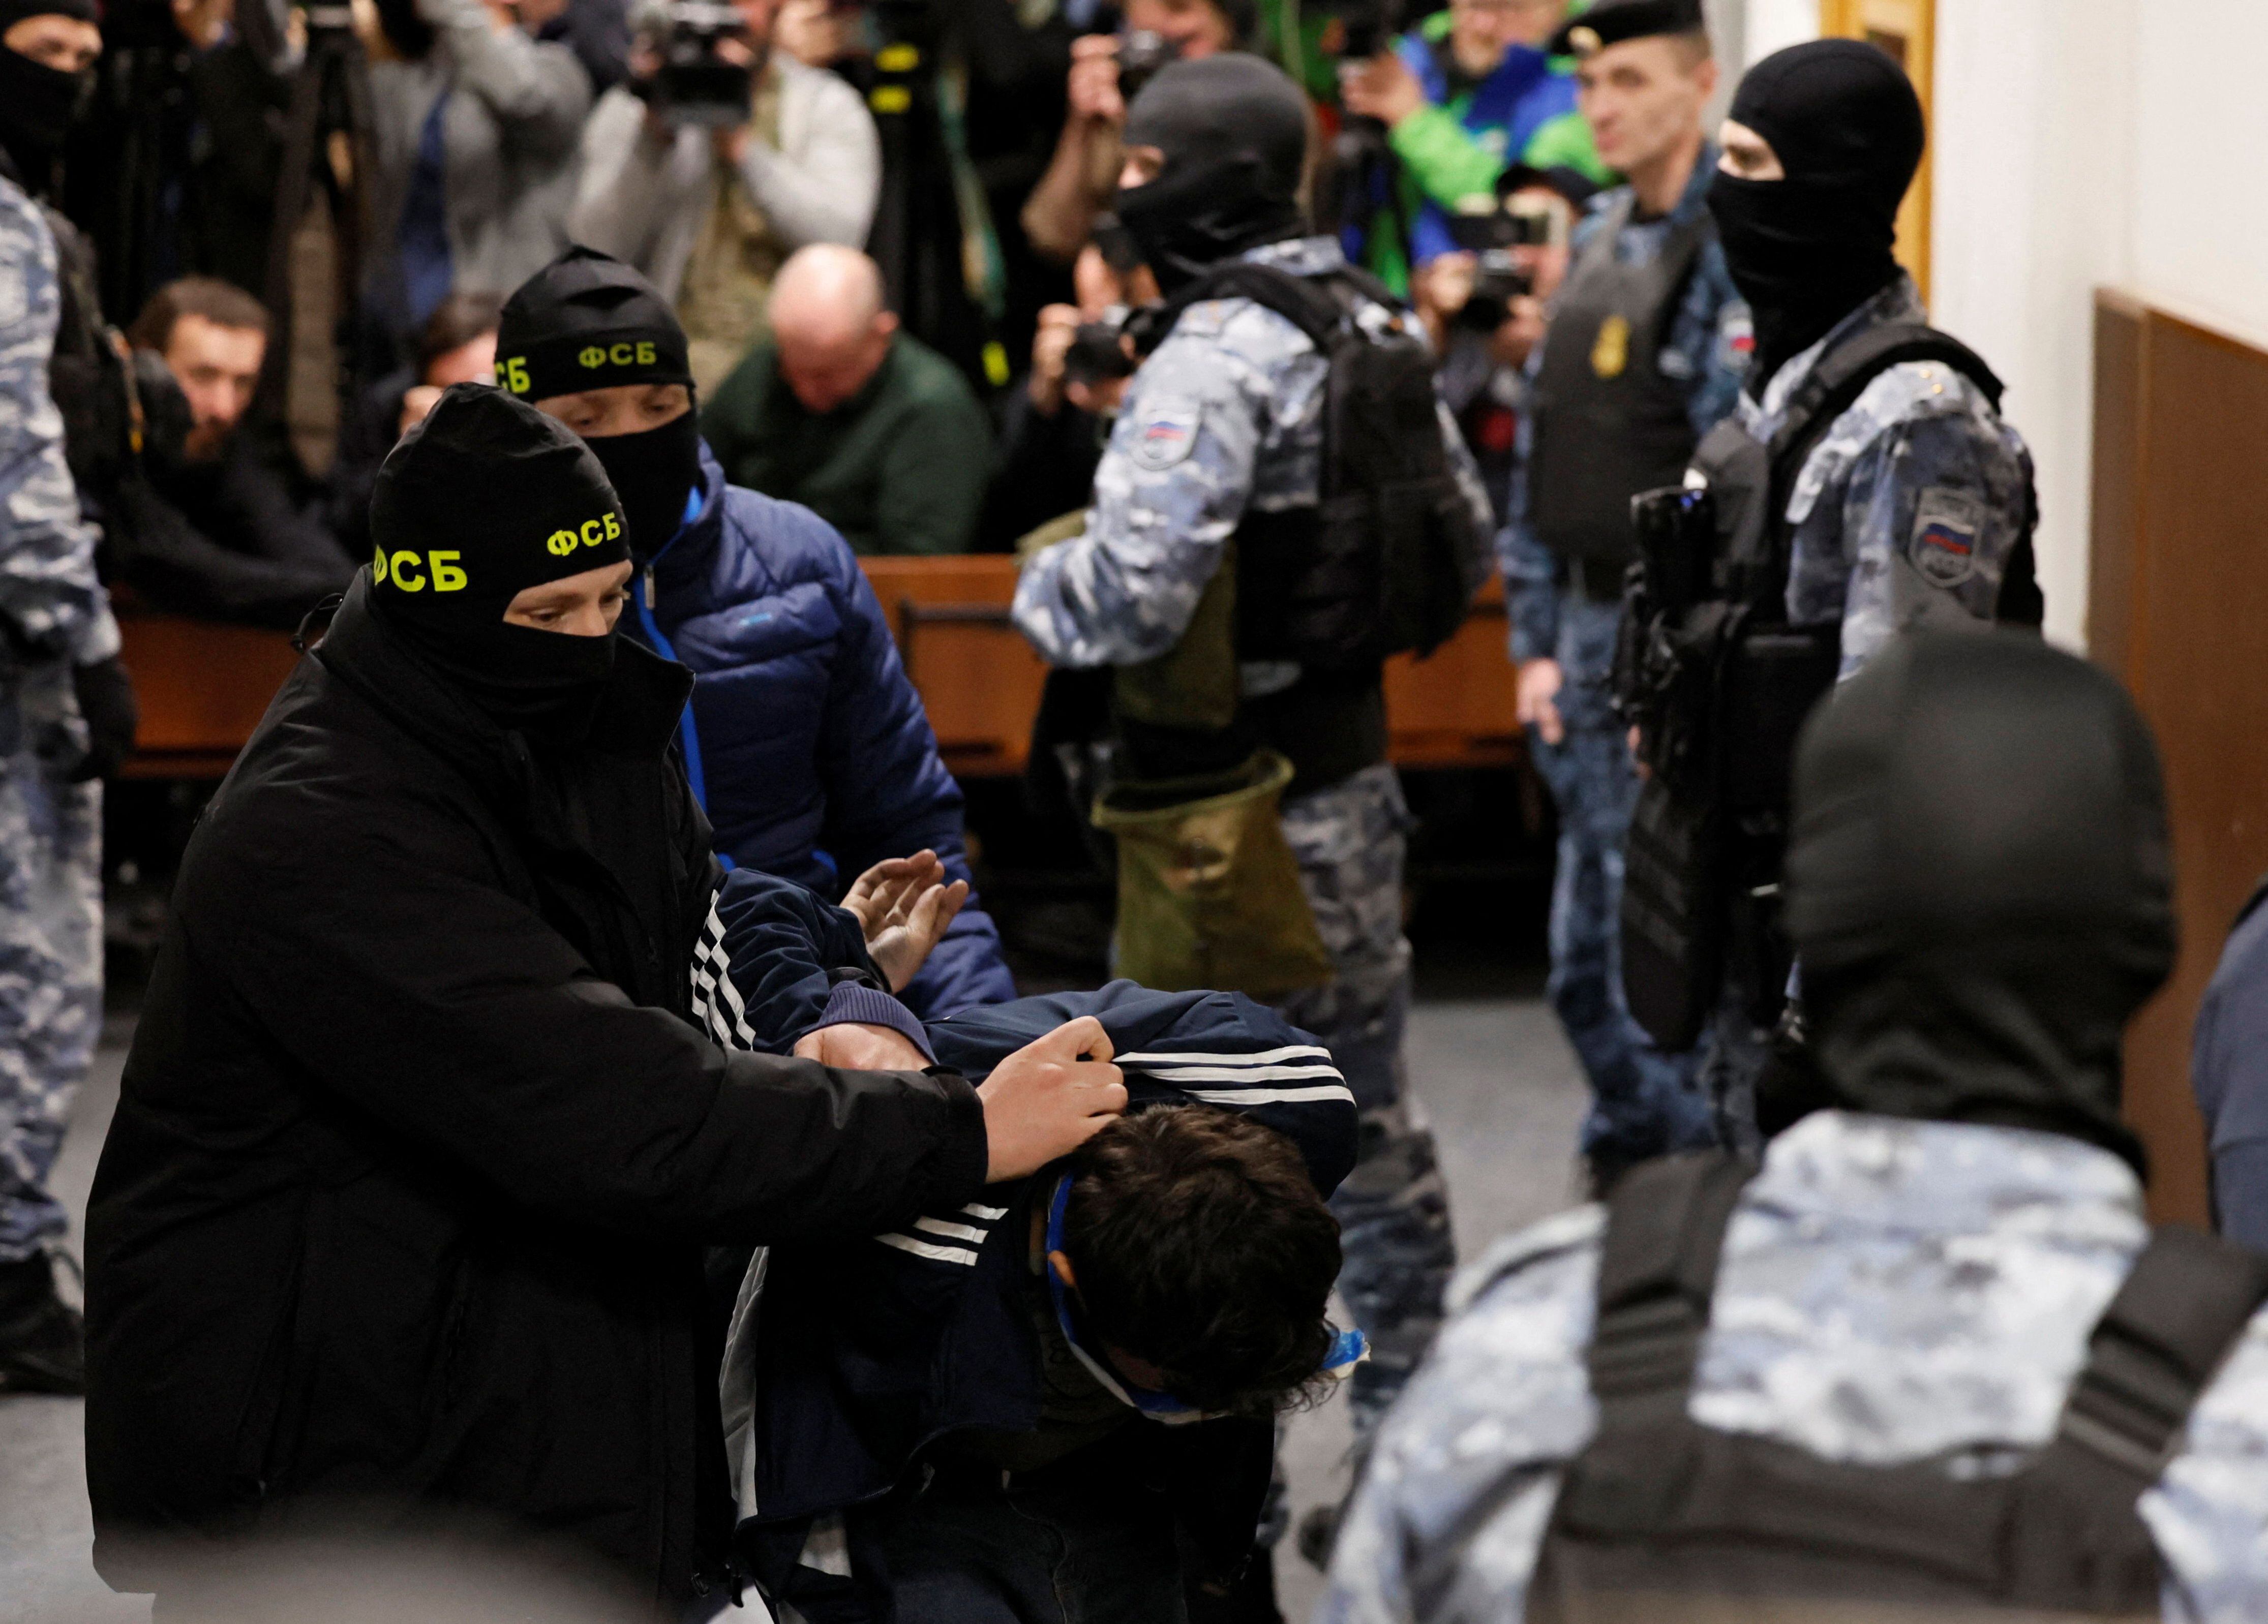 Así fue escoltado uno de los detenidos hacia el tribunal de Basmanny, en Moscú (REUTERS/Shamil Zhumatov)